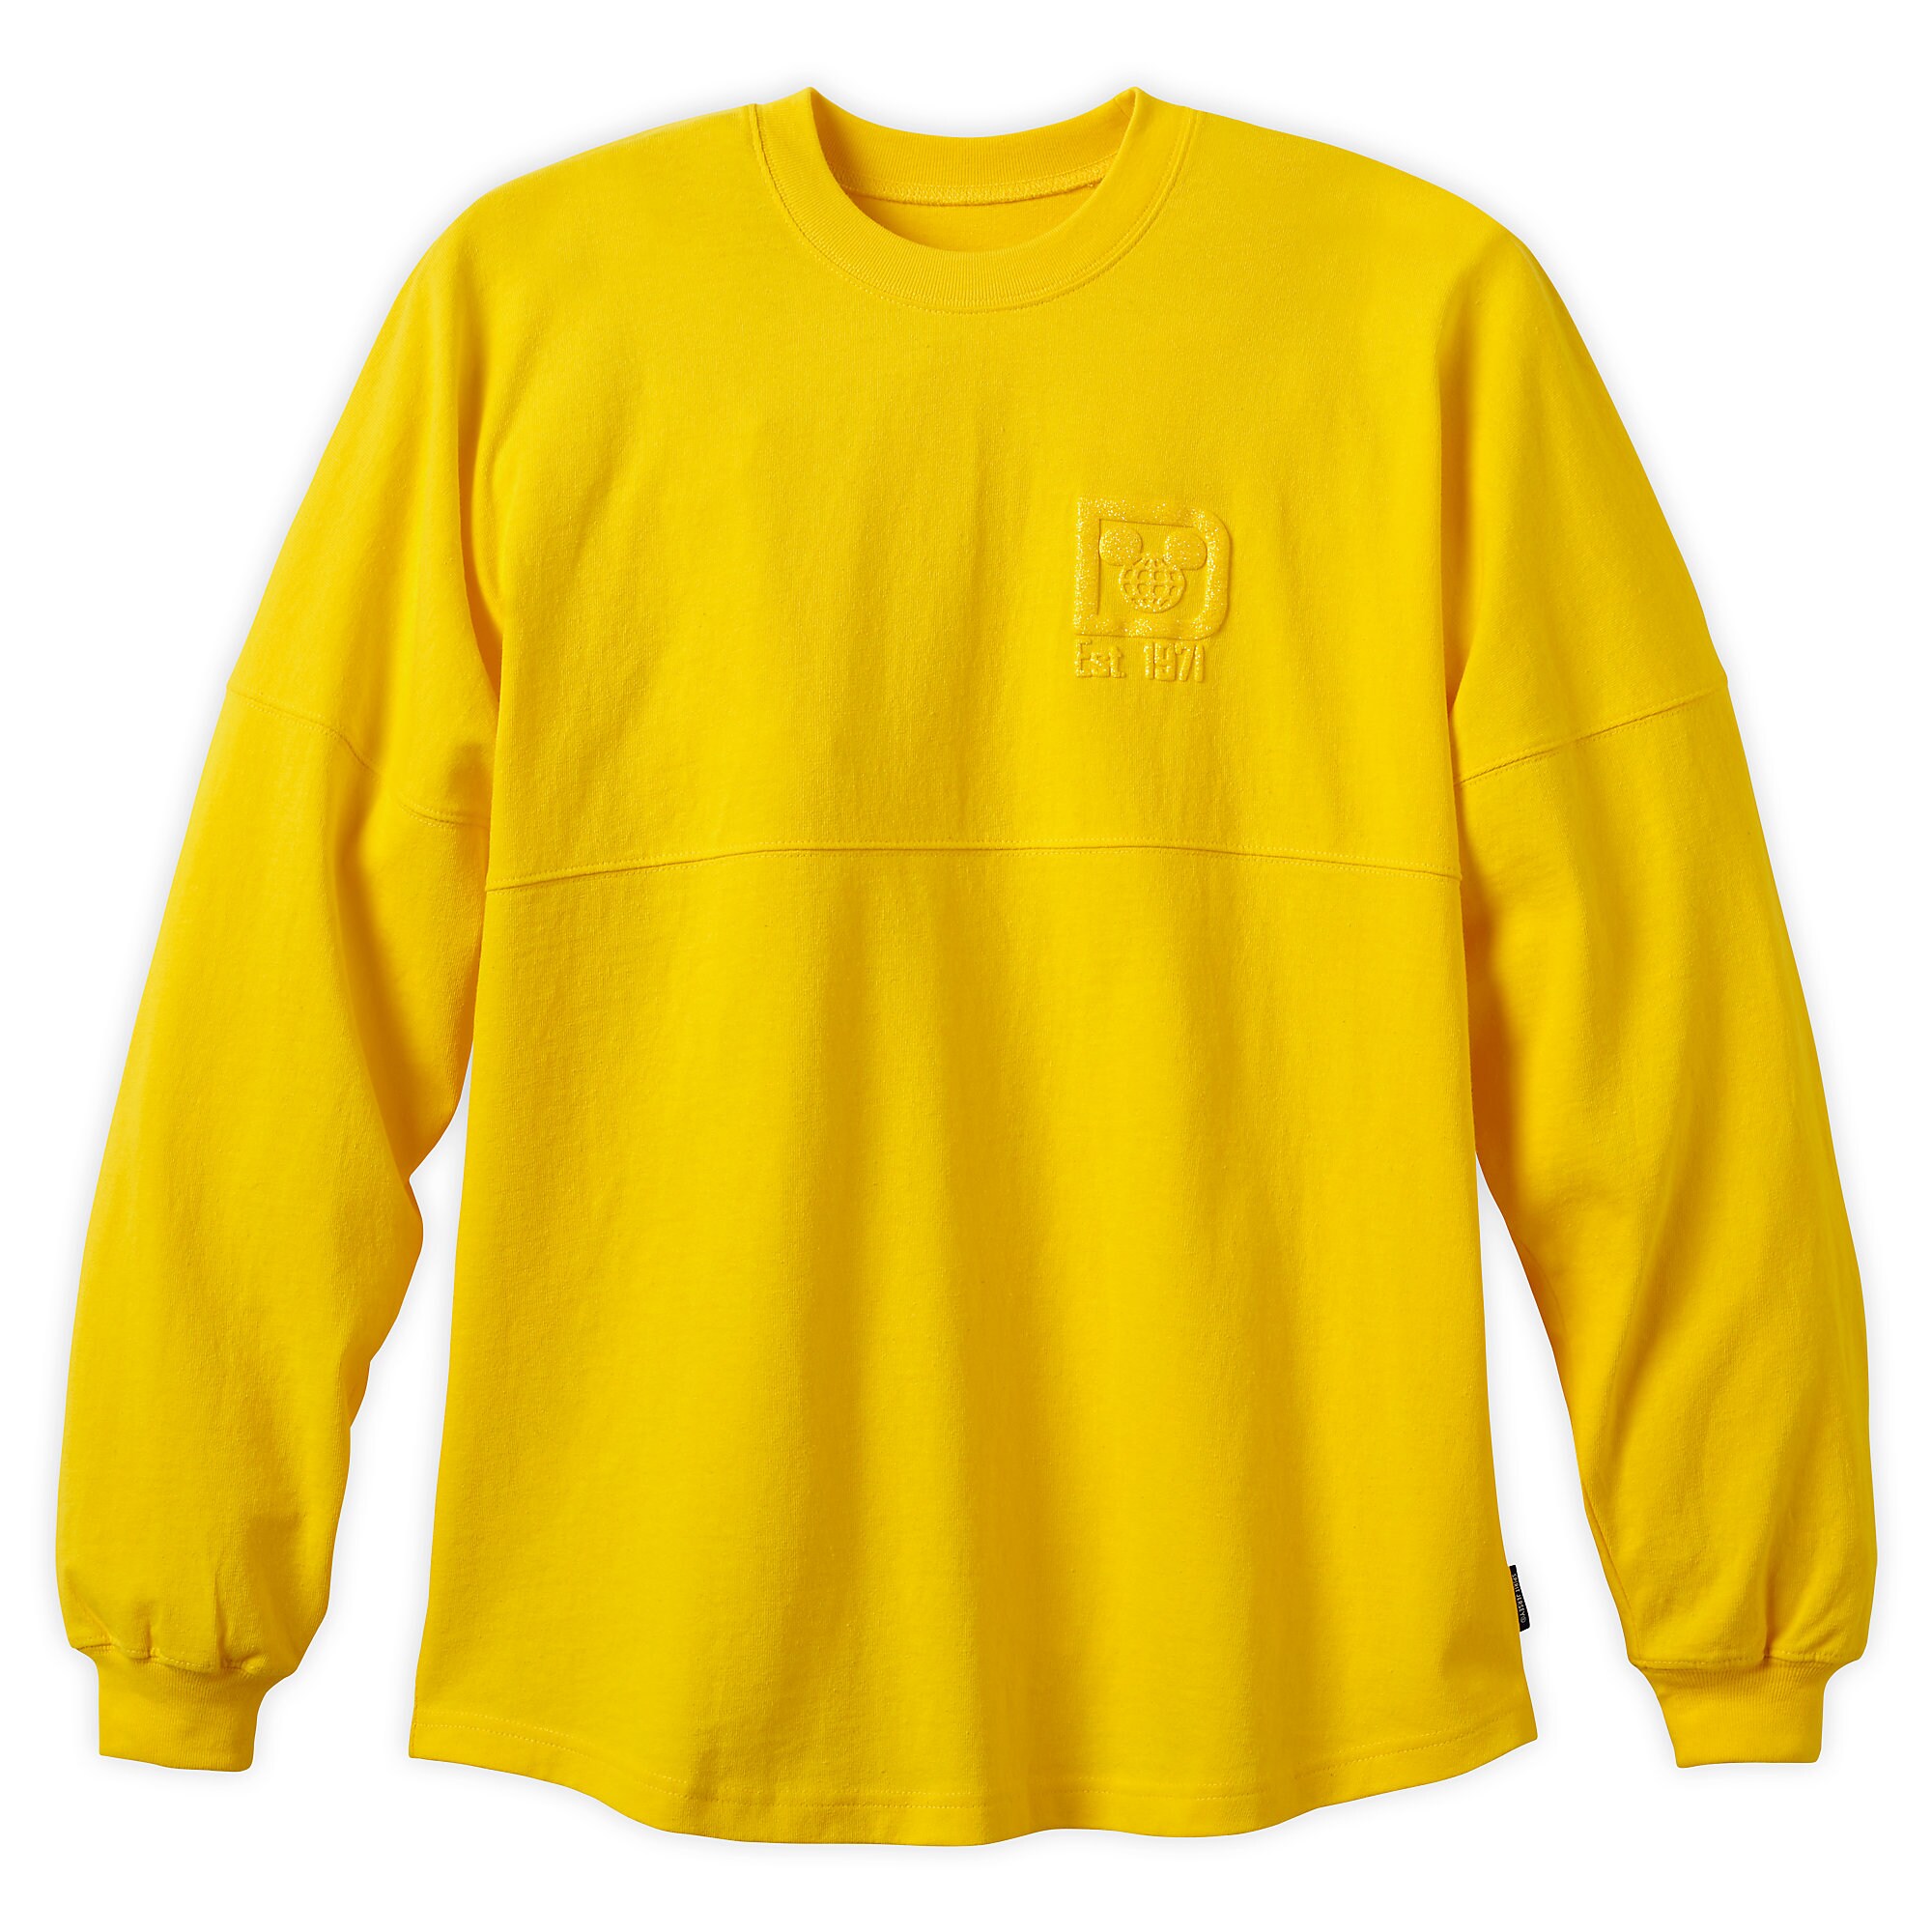 Walt Disney World Spirit Jersey for Adult - Dapper Yellow